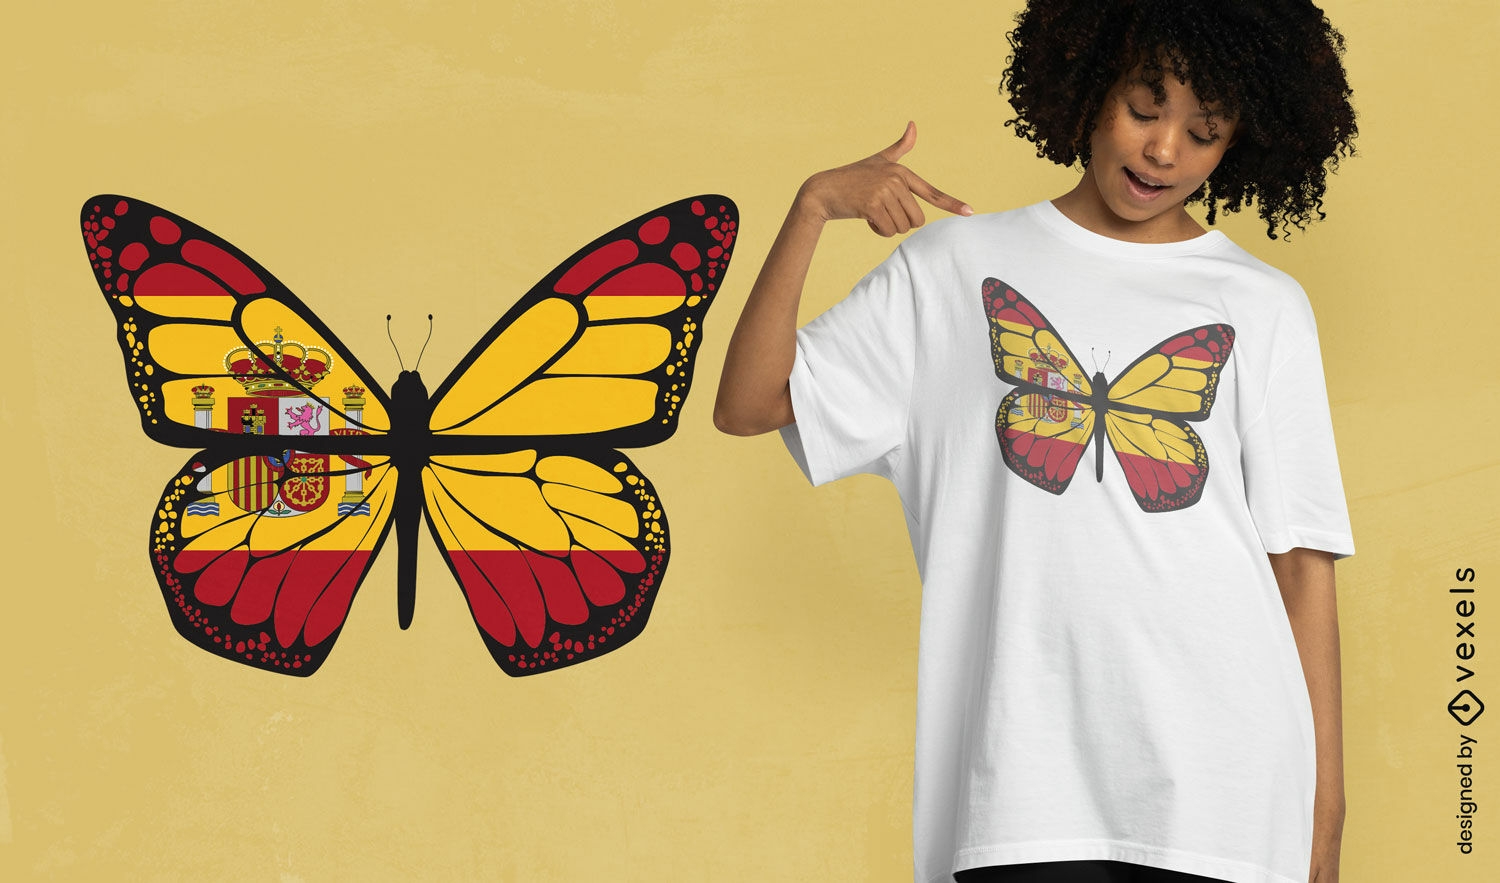 Dise?o de camiseta mariposa con bandera de Espa?a.